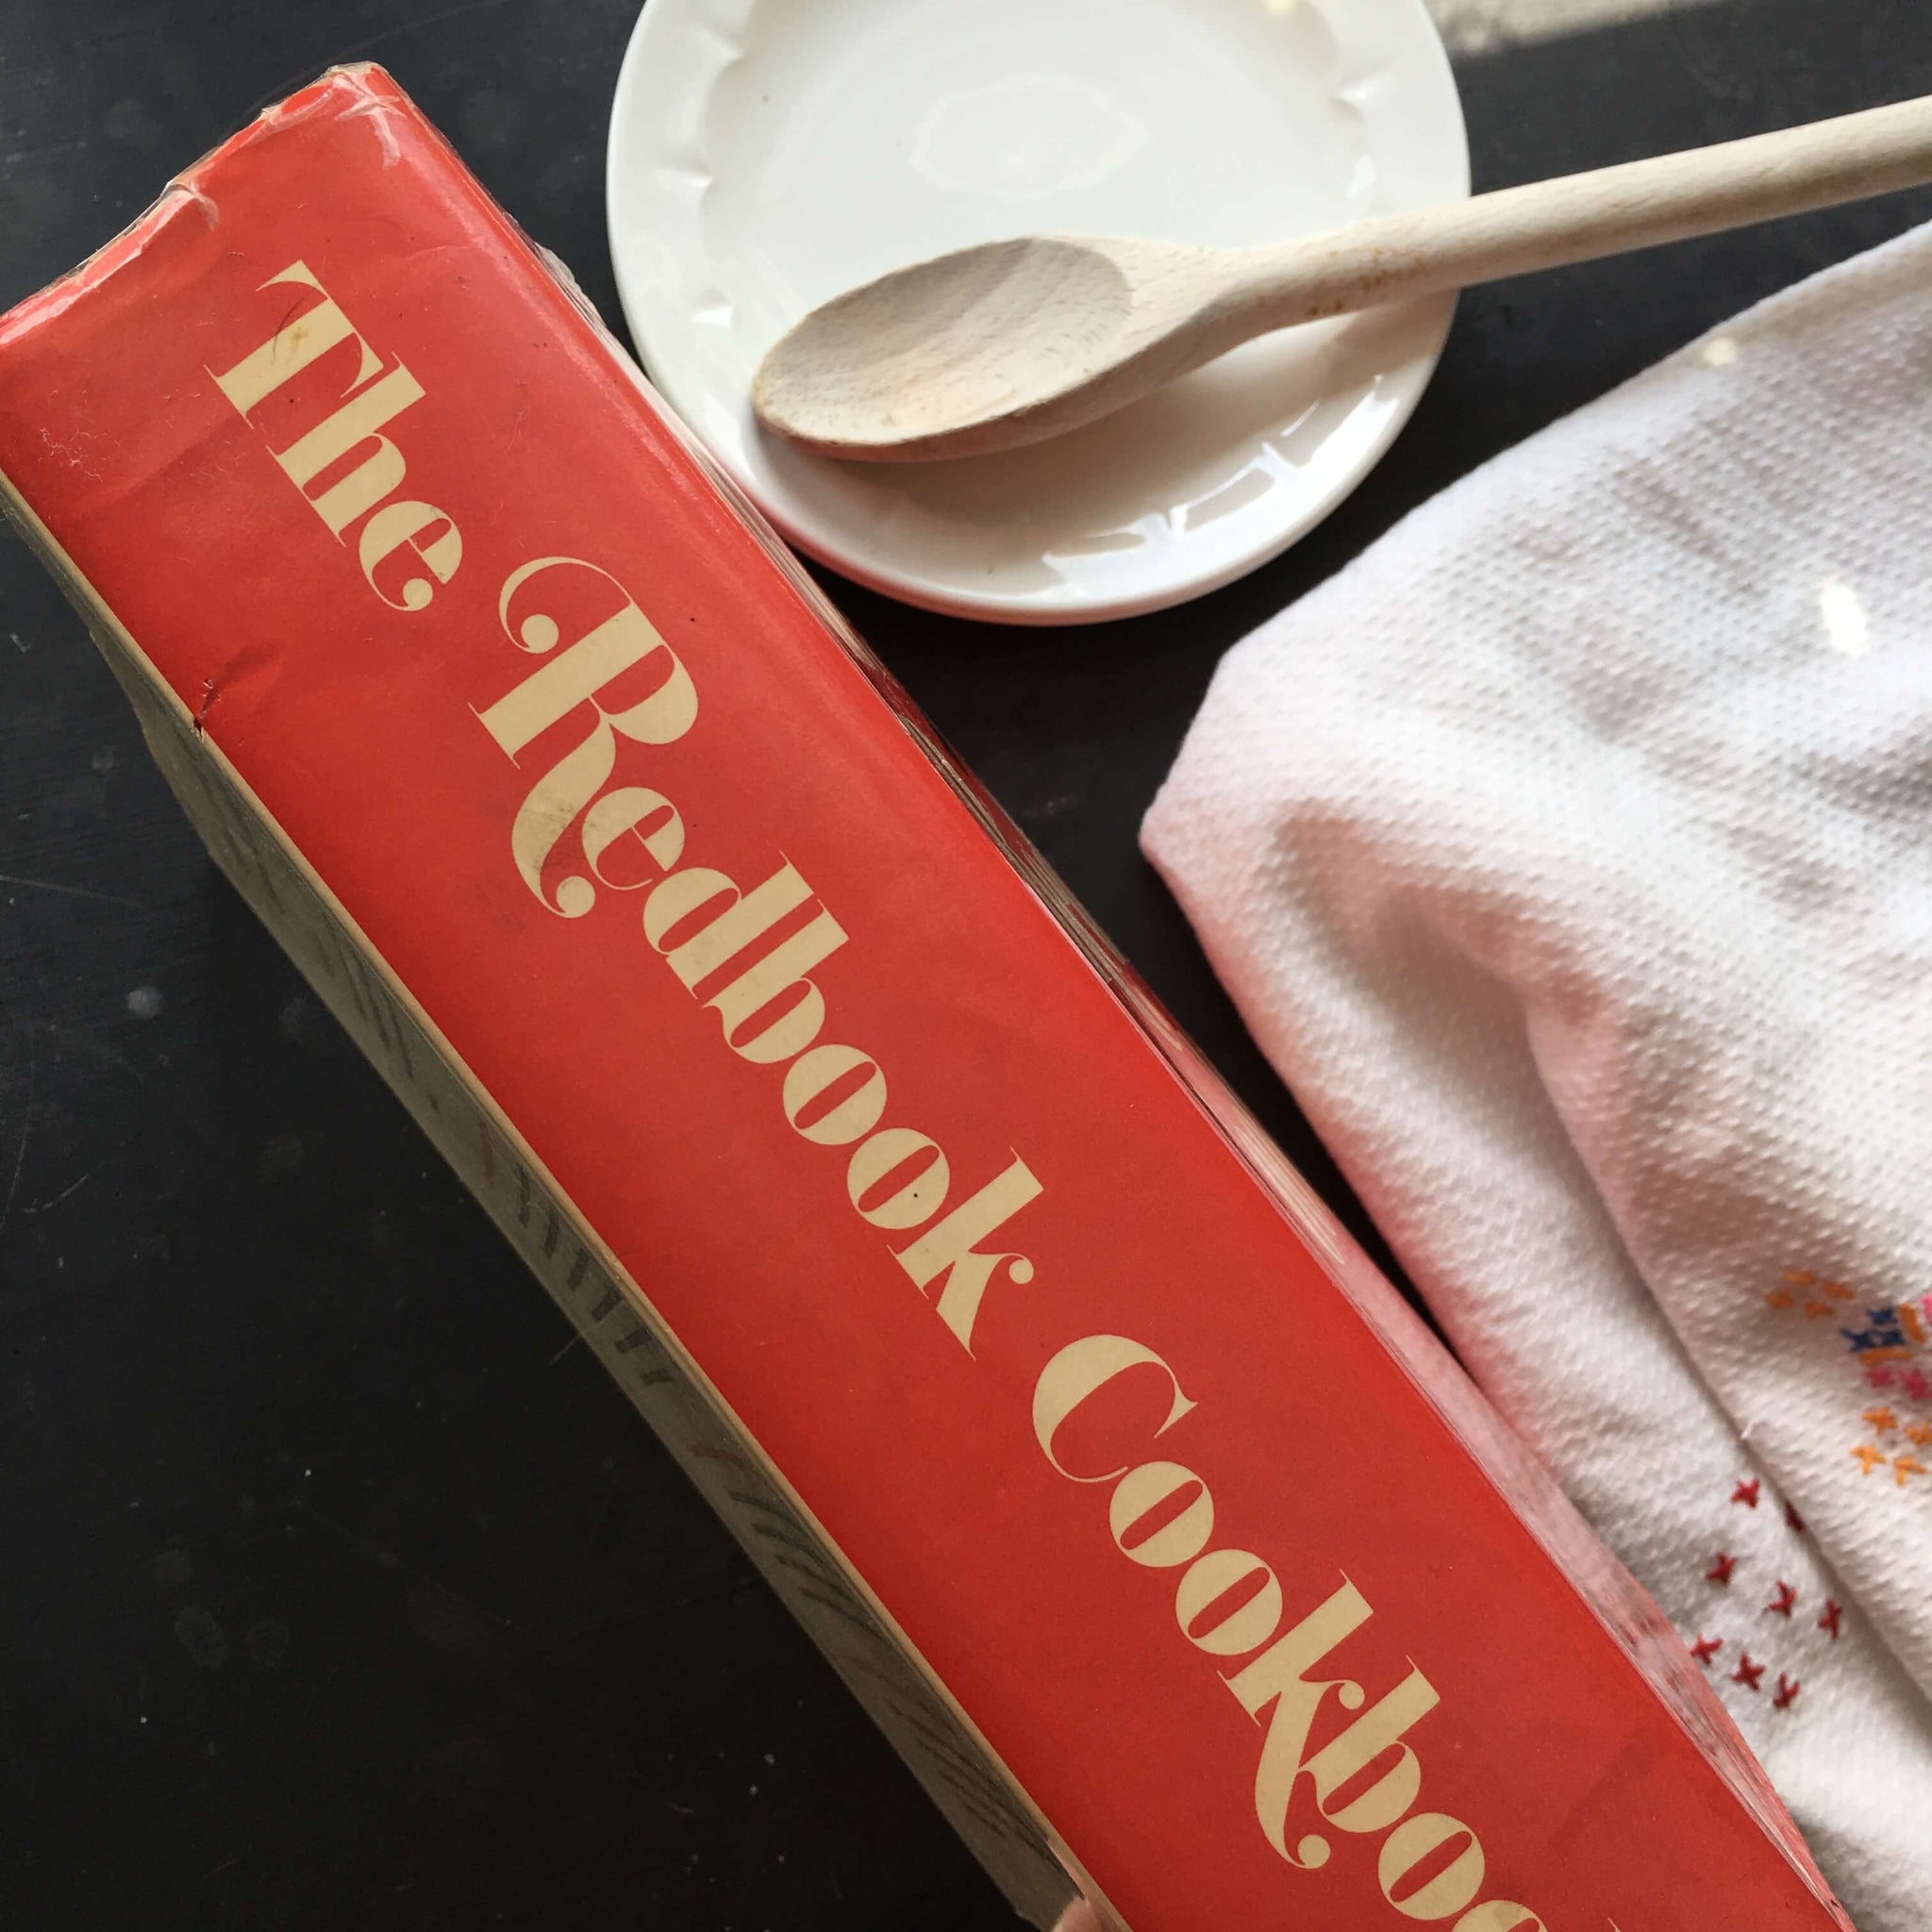 The Redbook Cookbook - 1971 Edition - Ruth Fairchild Pomeroy